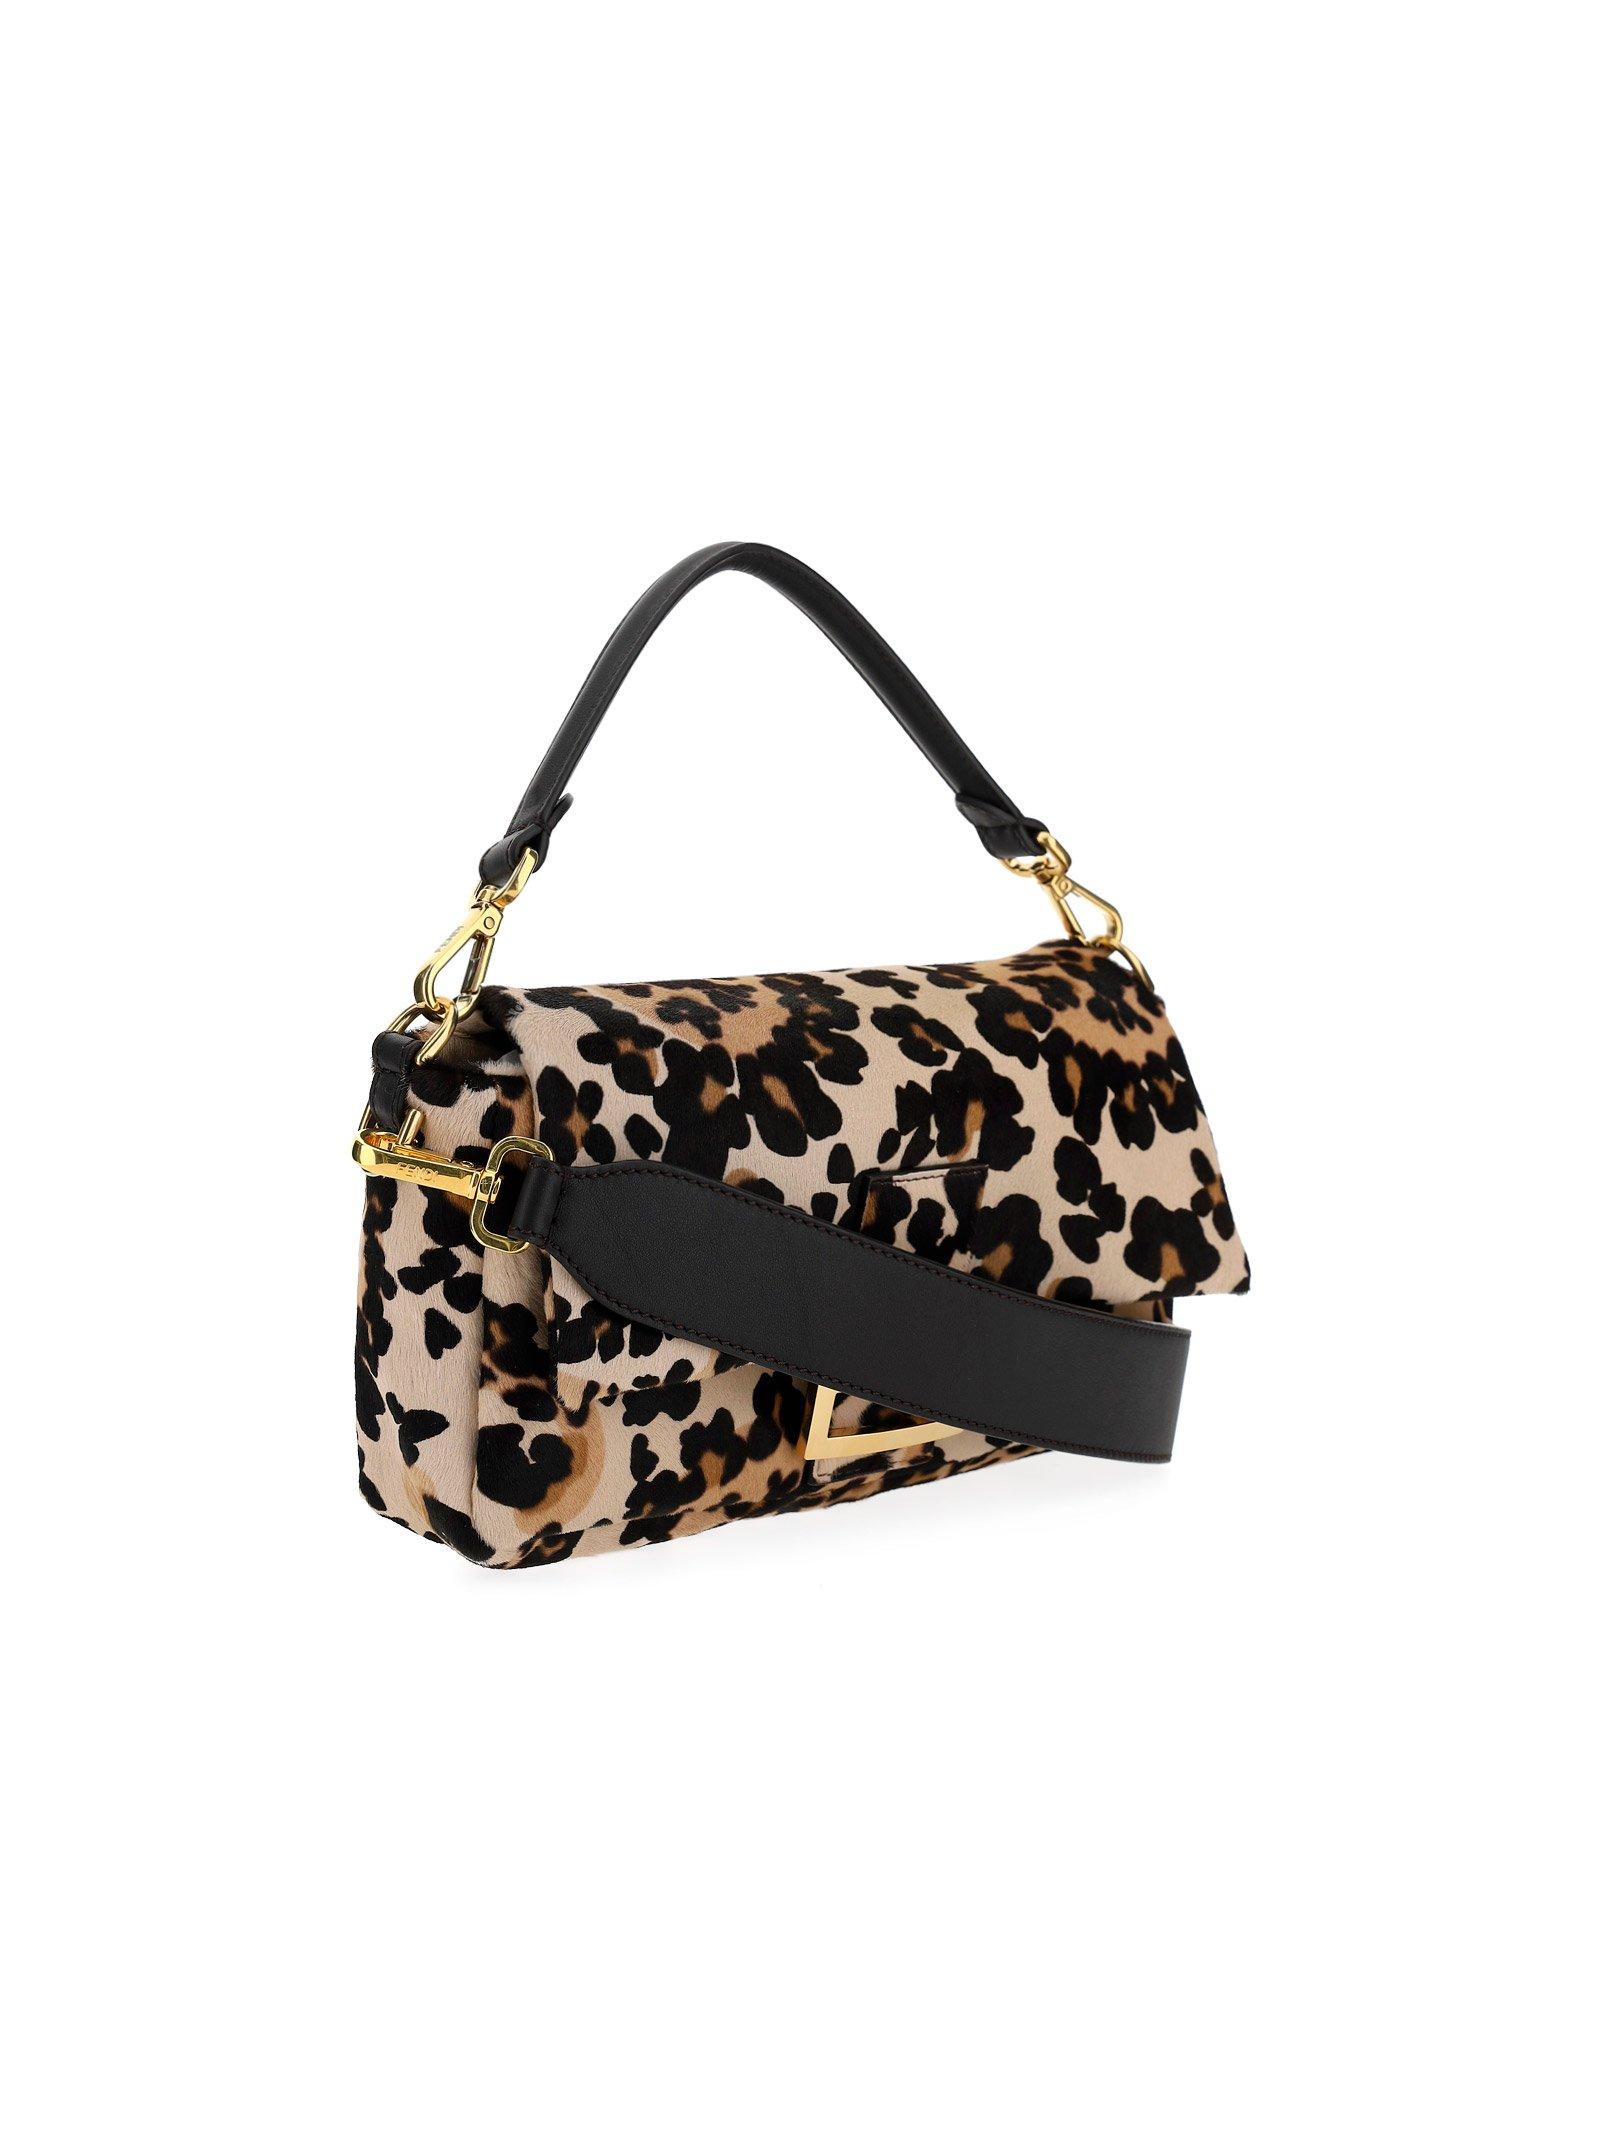 Fendi Leopard Print Flap Shoulder Bag - Crossbody Bags, Handbags -  FEN281045